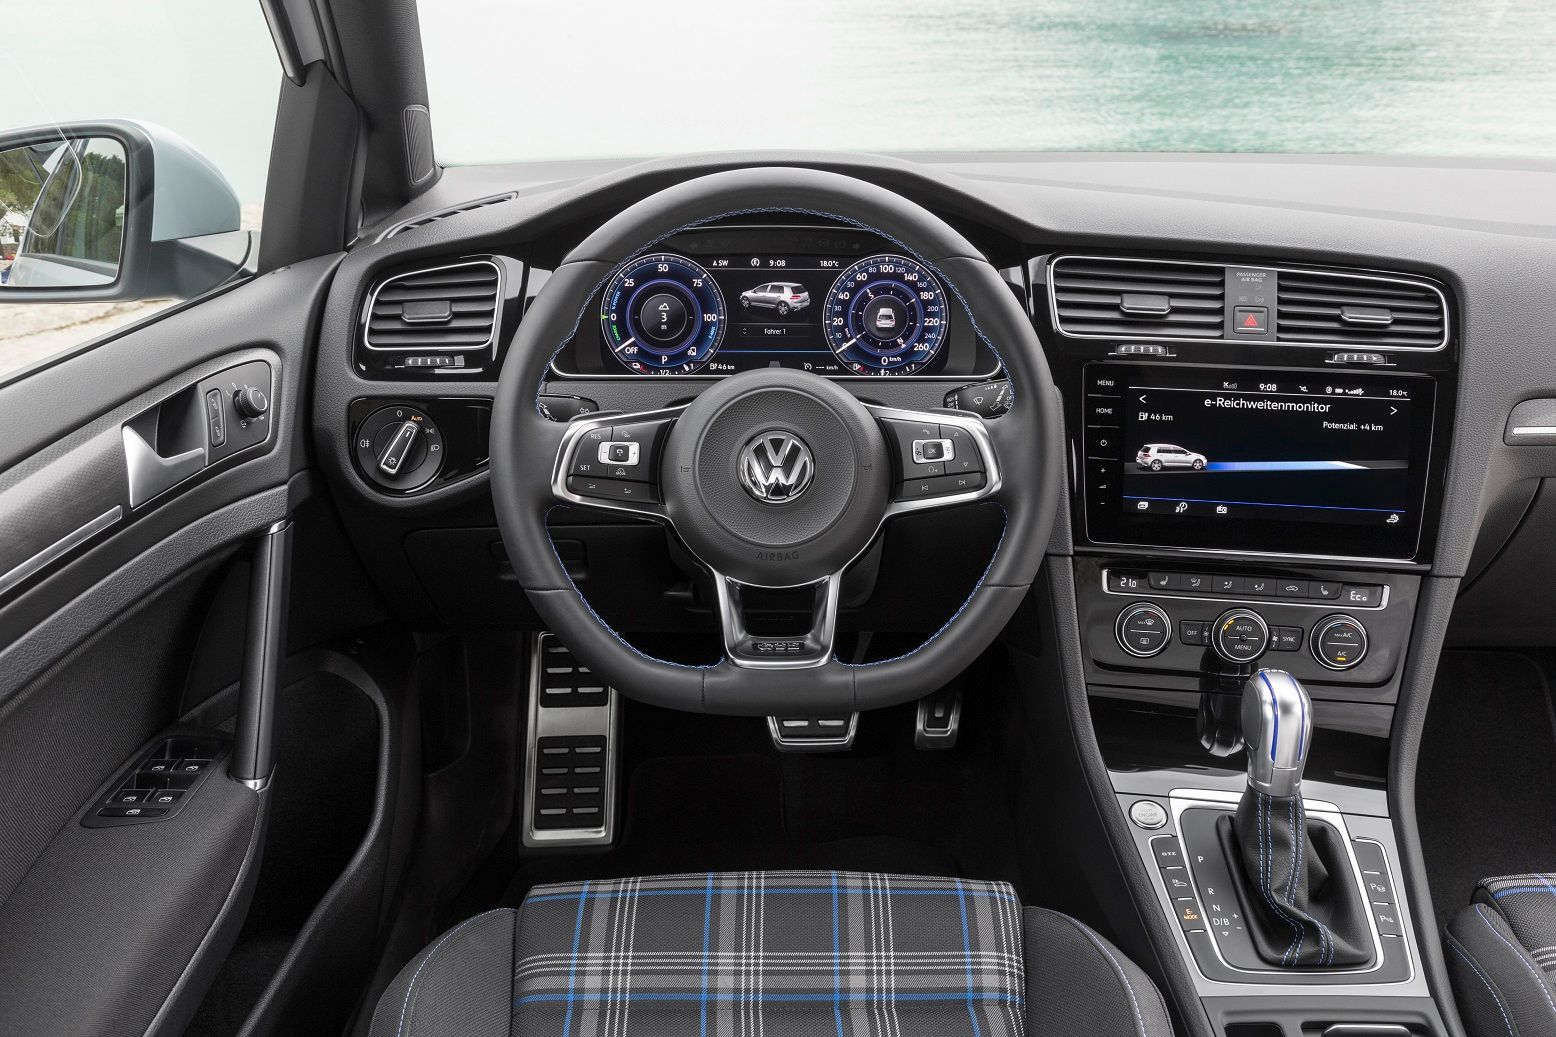 Volkswagen Golf GTE 2017 přístrojovka